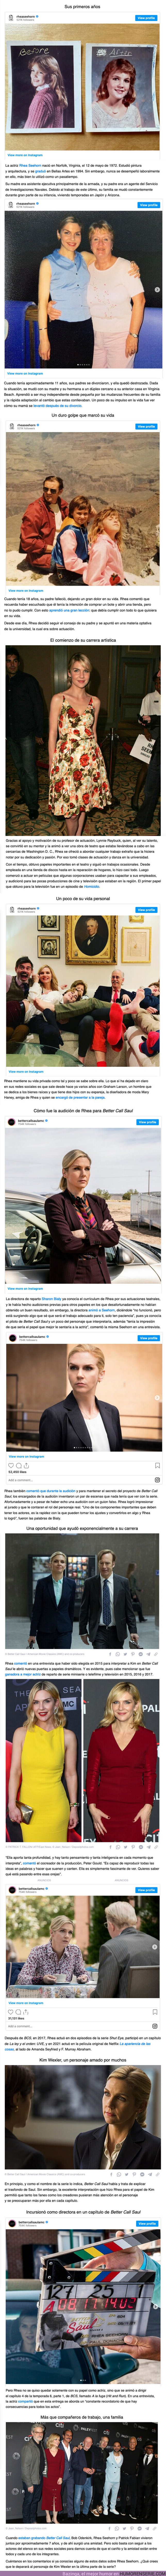 101901 - GALERÍA: Rhea Seehorn y el camino que recorrió para llegar a interpretar a la icónica Kim Wexler en “Better Call Saul”